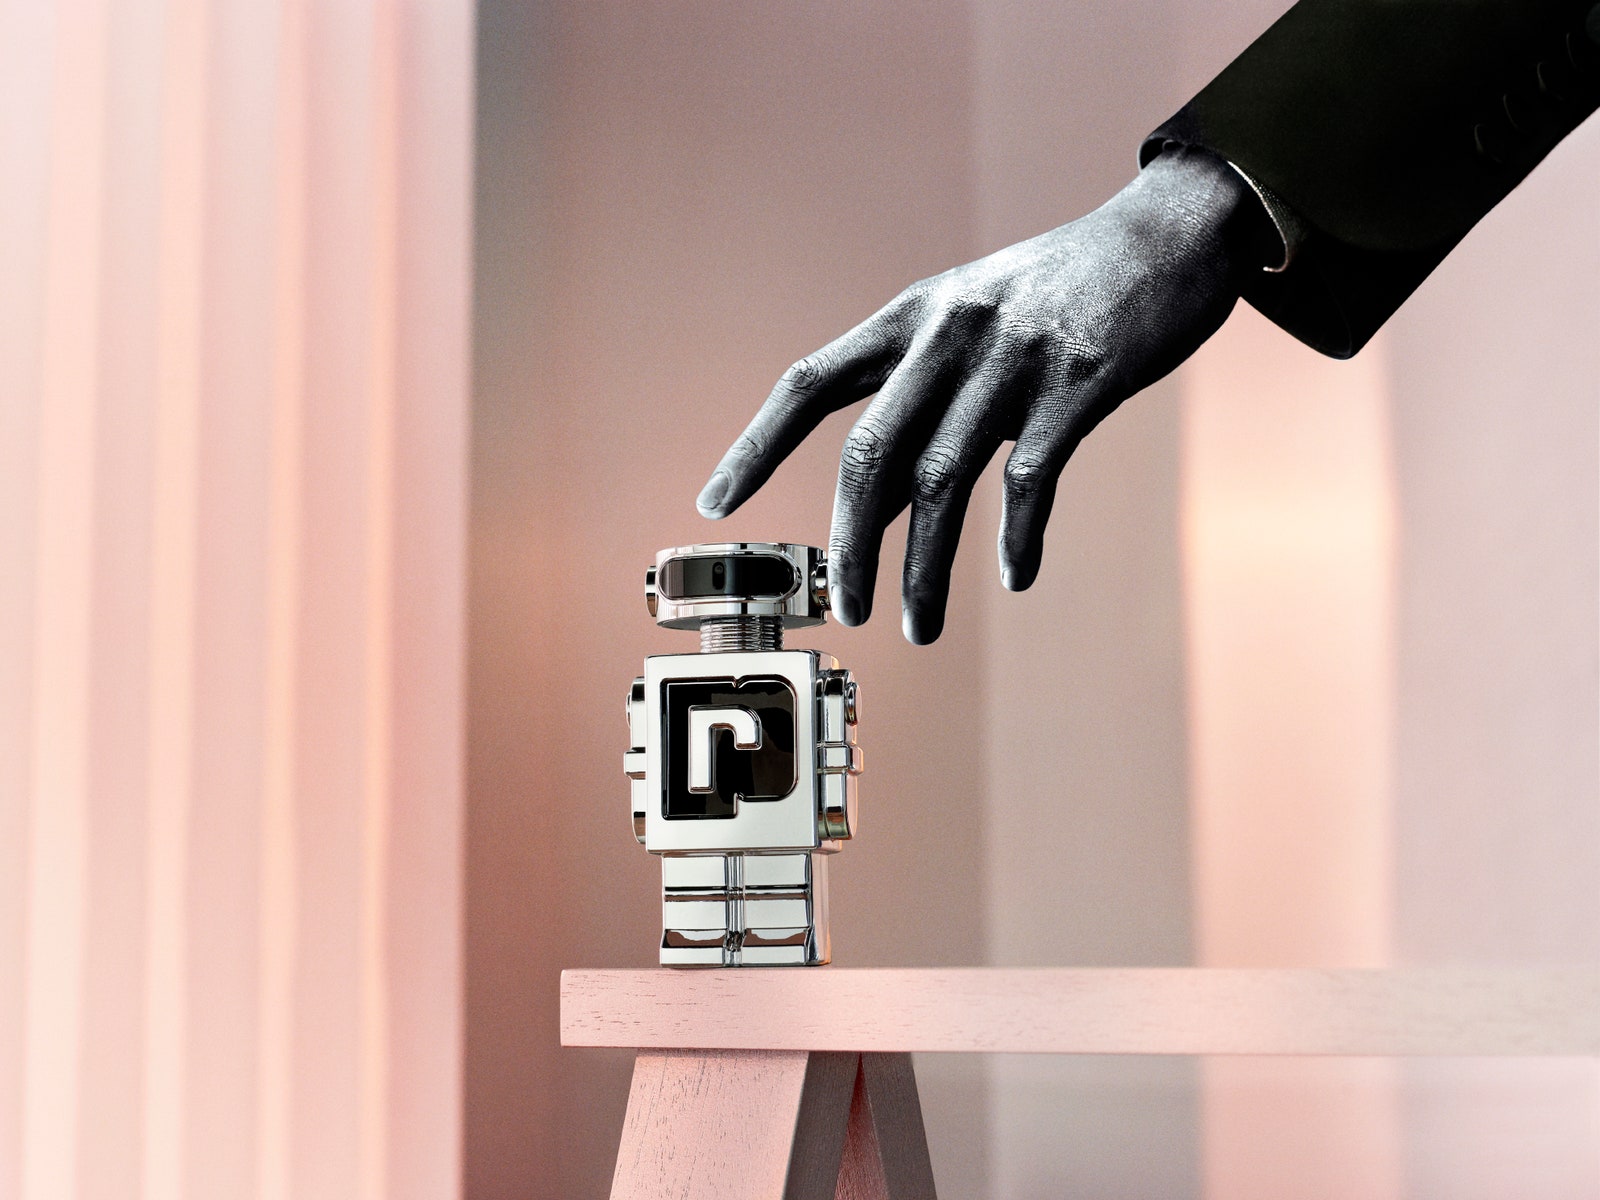 Четверо парфюмеров не считая искусственного интеллекта как создать идеальный аромат будущего